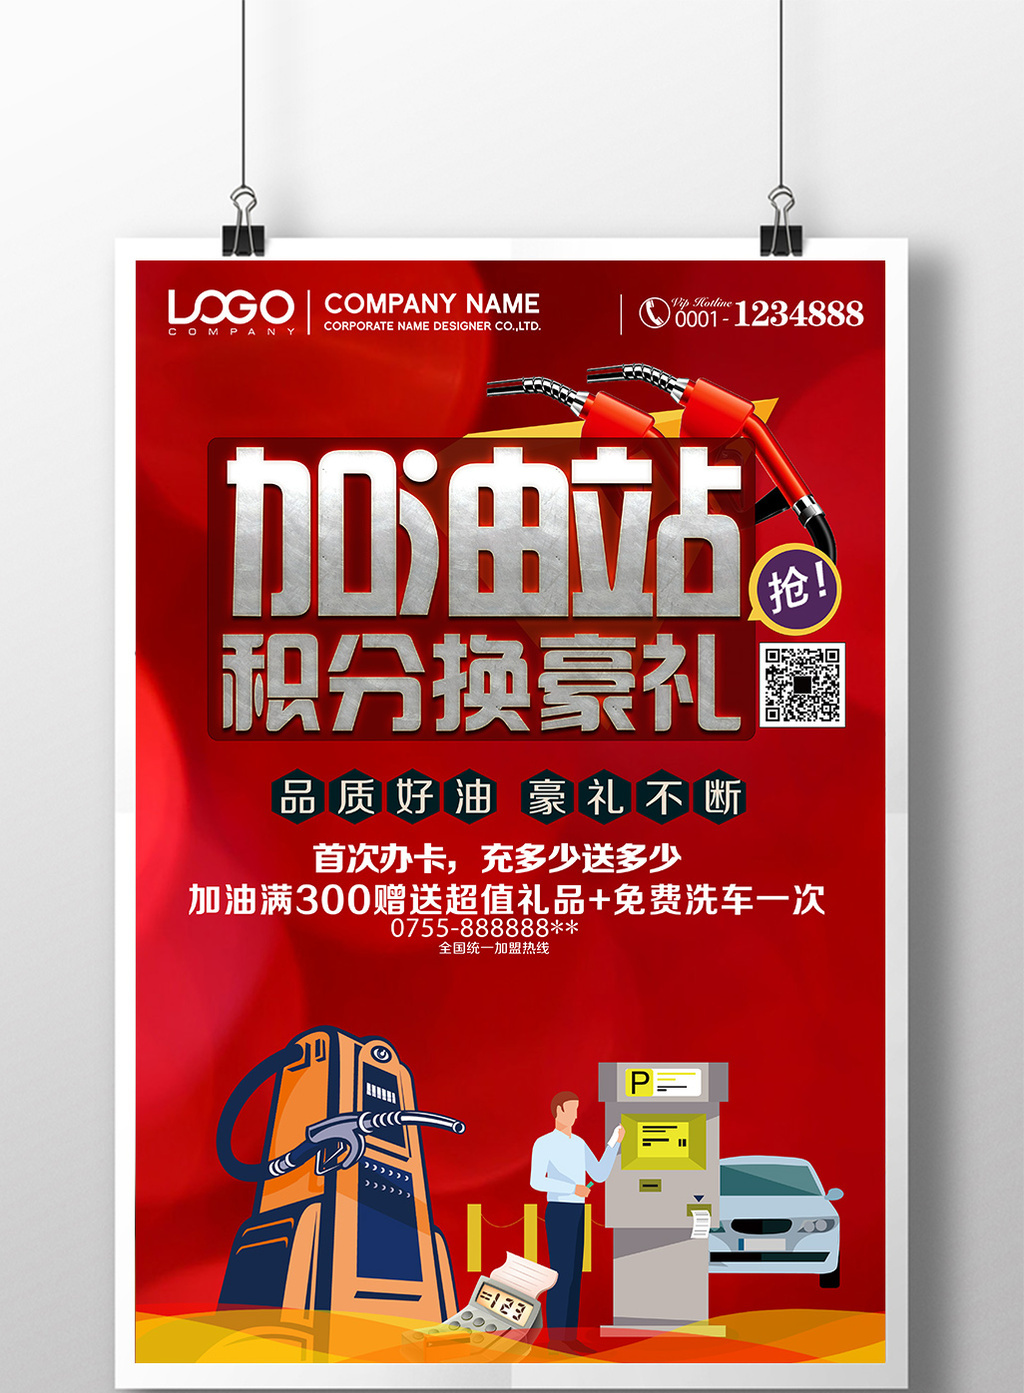 中国石油加油站海报模板免费下载 _广告设计图片设计素材_